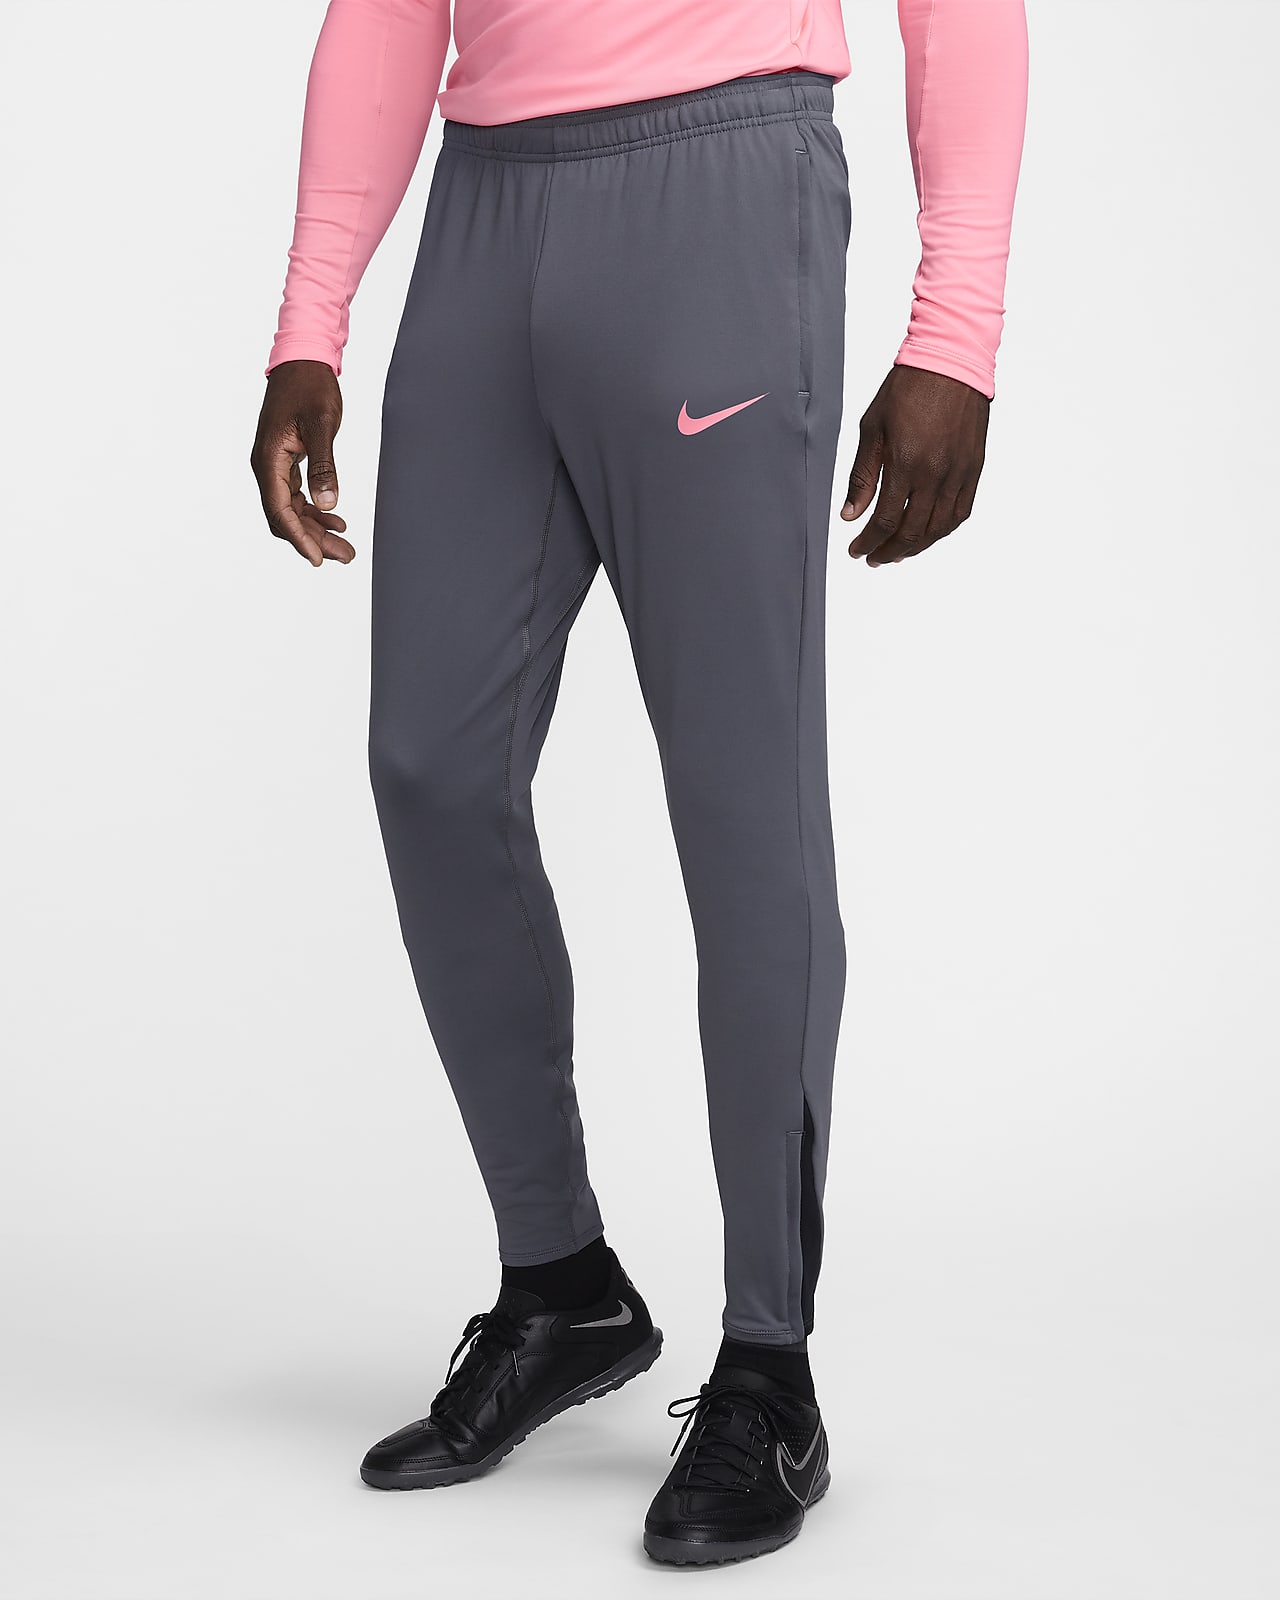 Pantalon de foot Dri-FIT Nike Strike pour homme